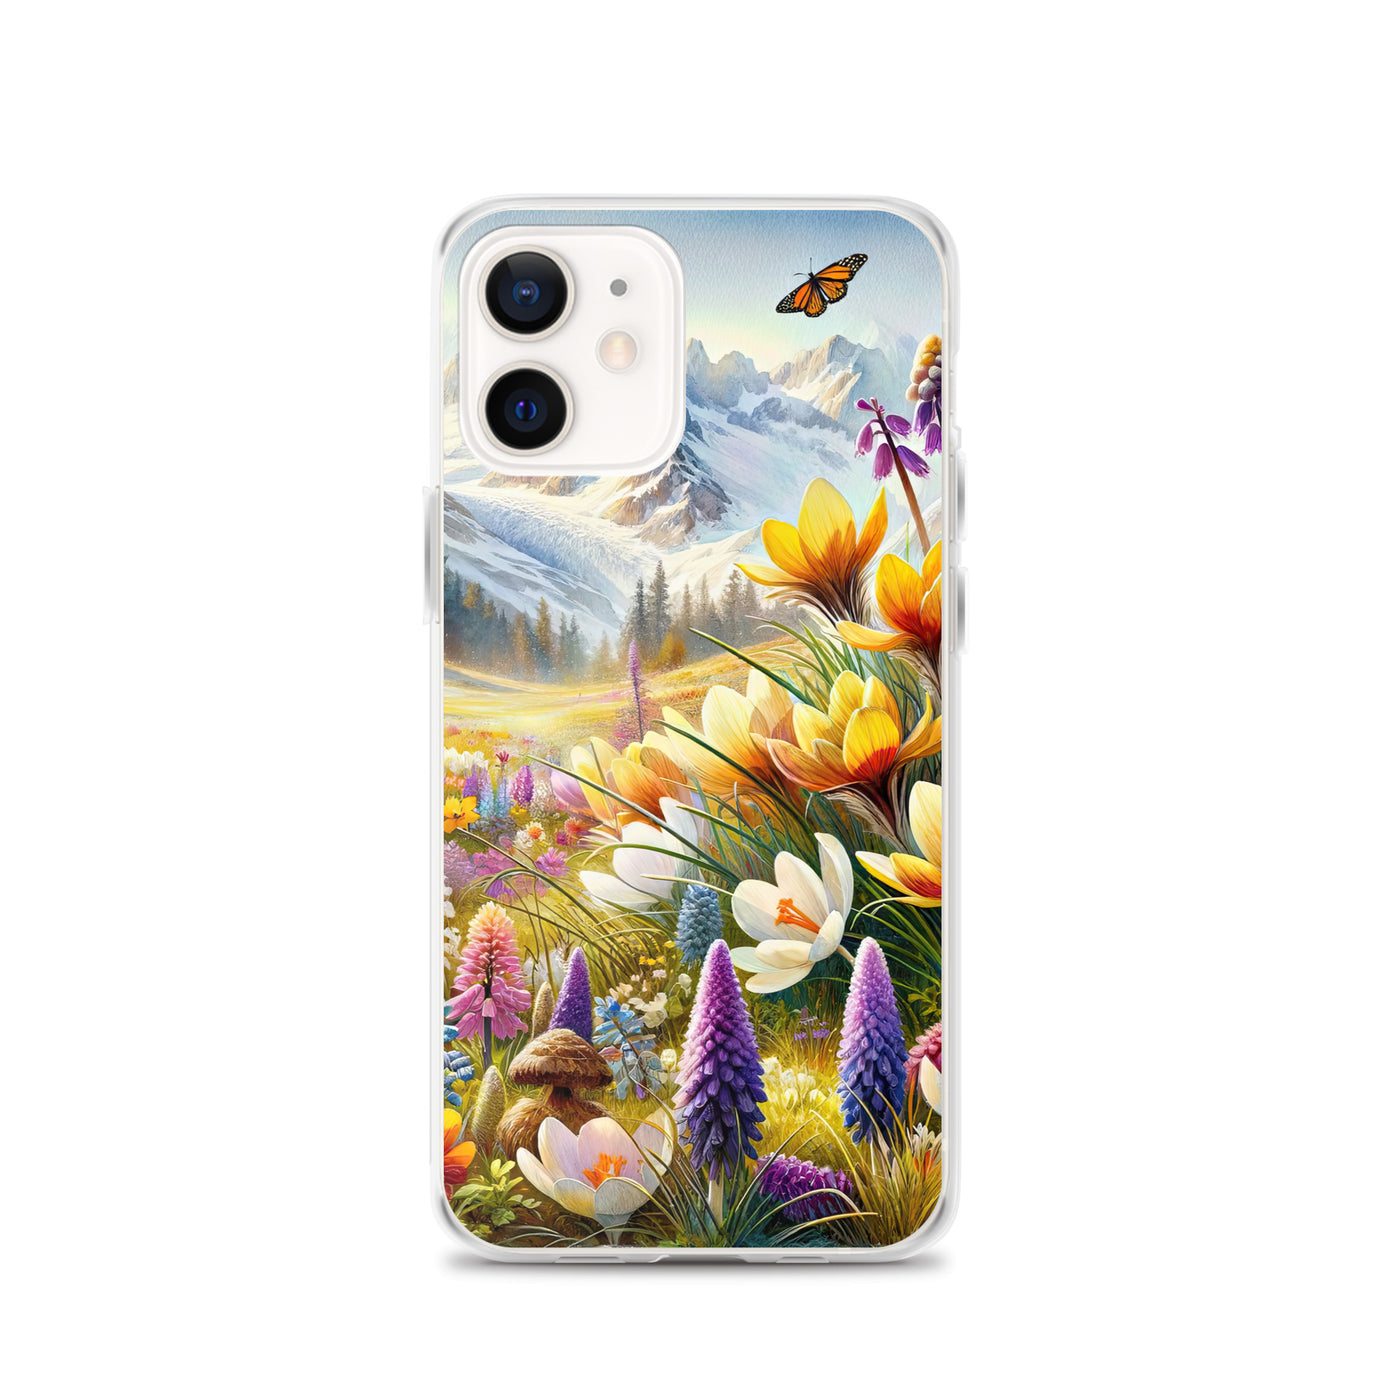 Aquarell einer ruhigen Almwiese, farbenfrohe Bergblumen in den Alpen - iPhone Schutzhülle (durchsichtig) berge xxx yyy zzz iPhone 12